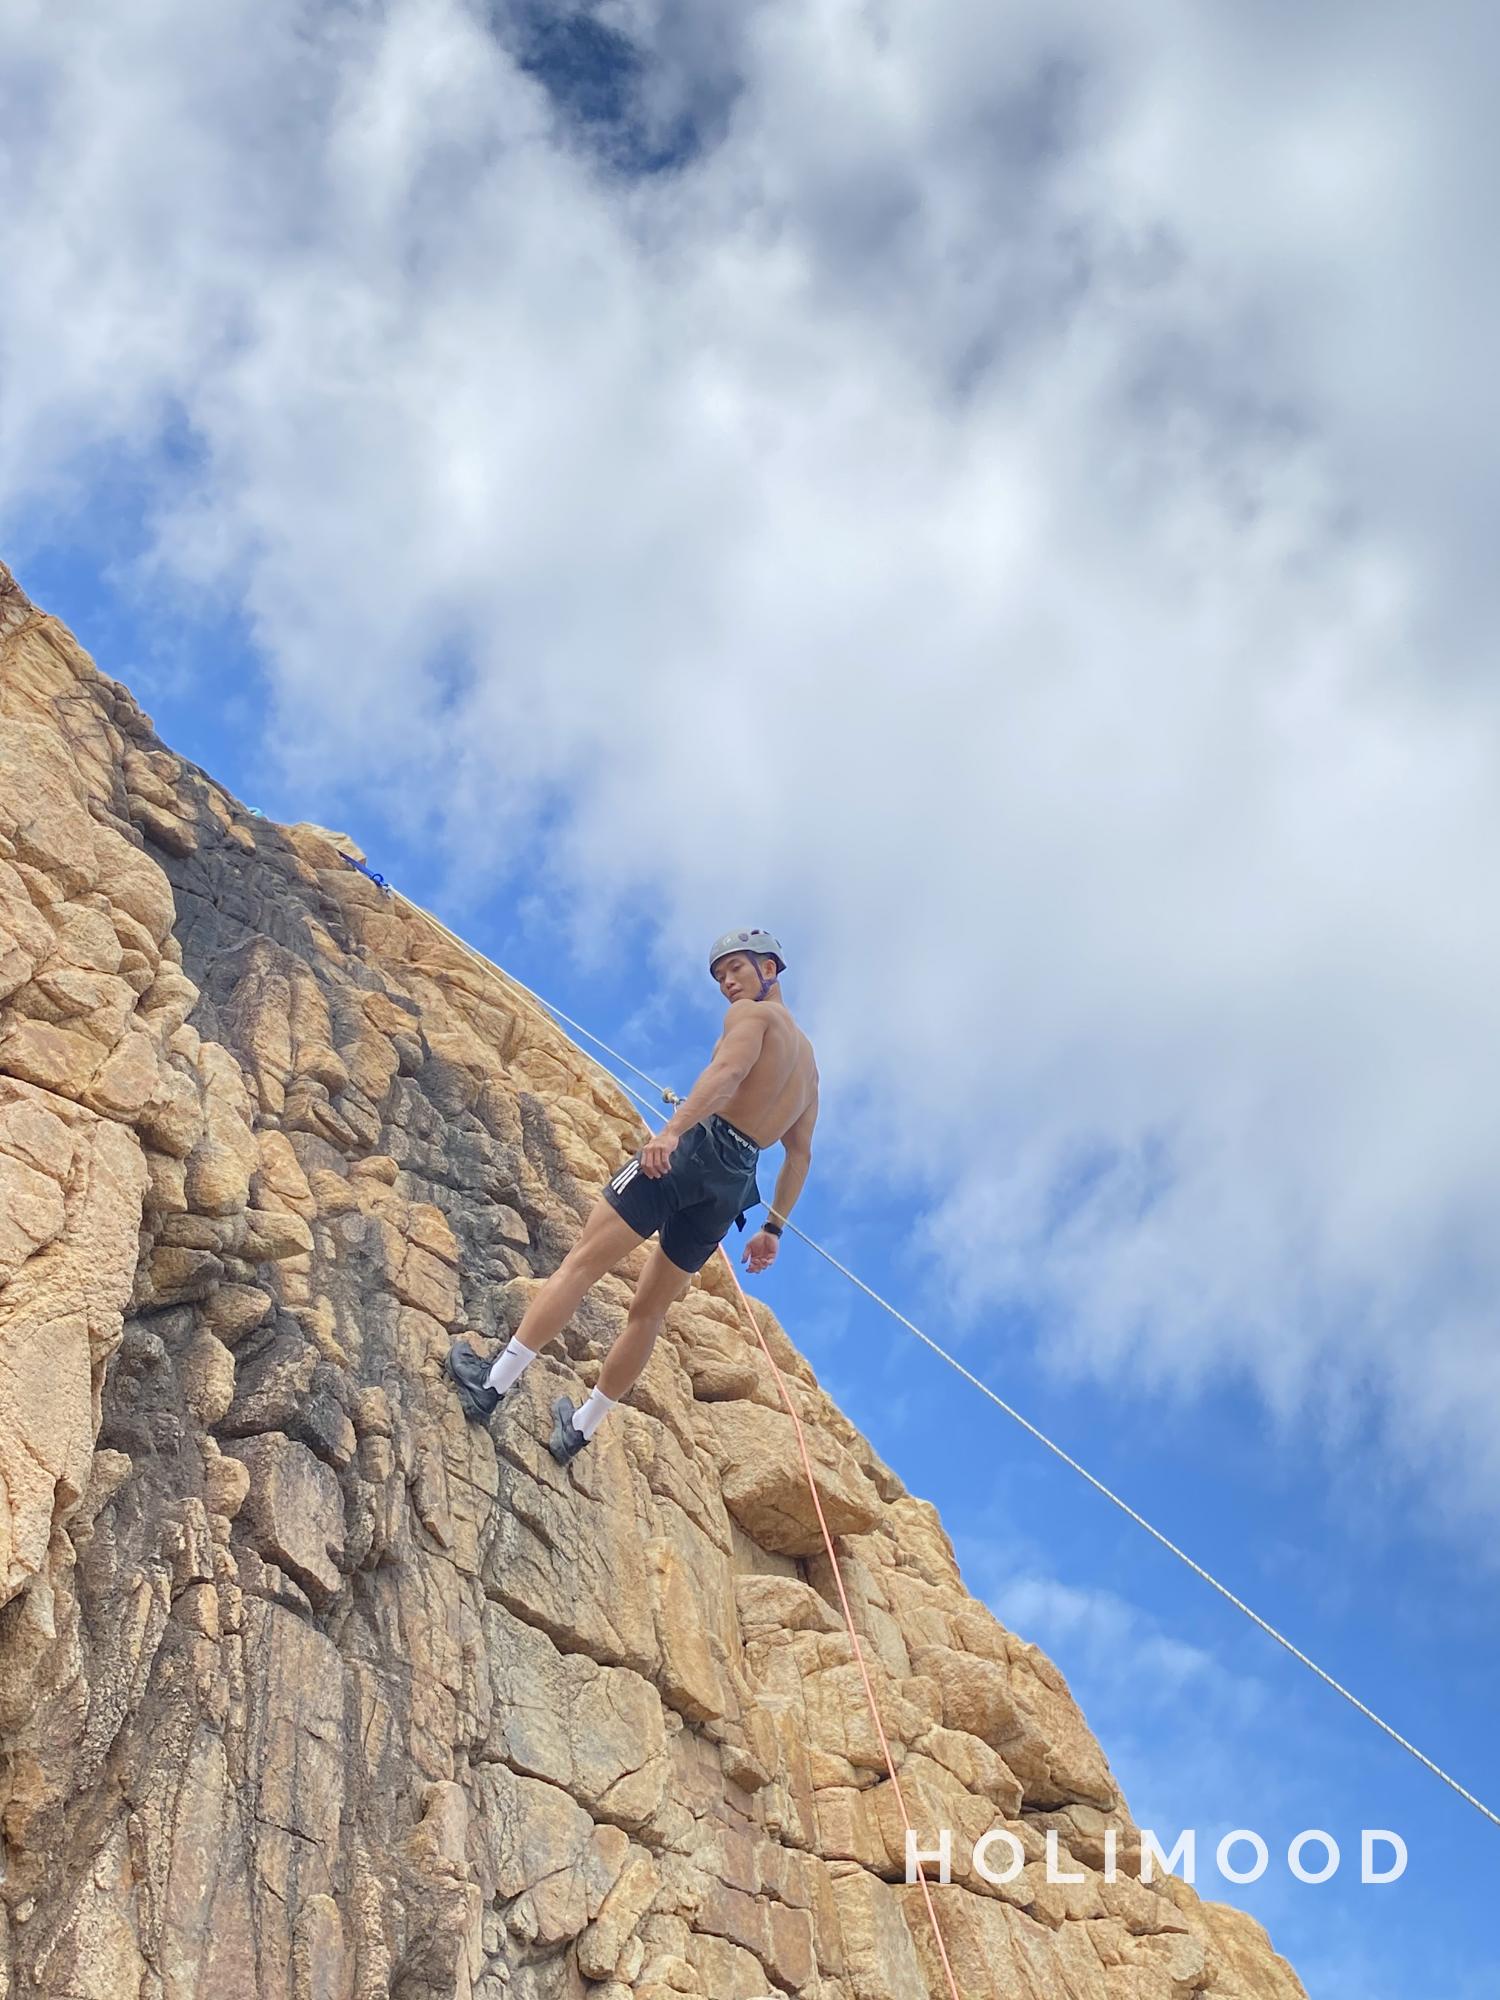 【石澳】飛索、攀岩及沿繩下降 體驗